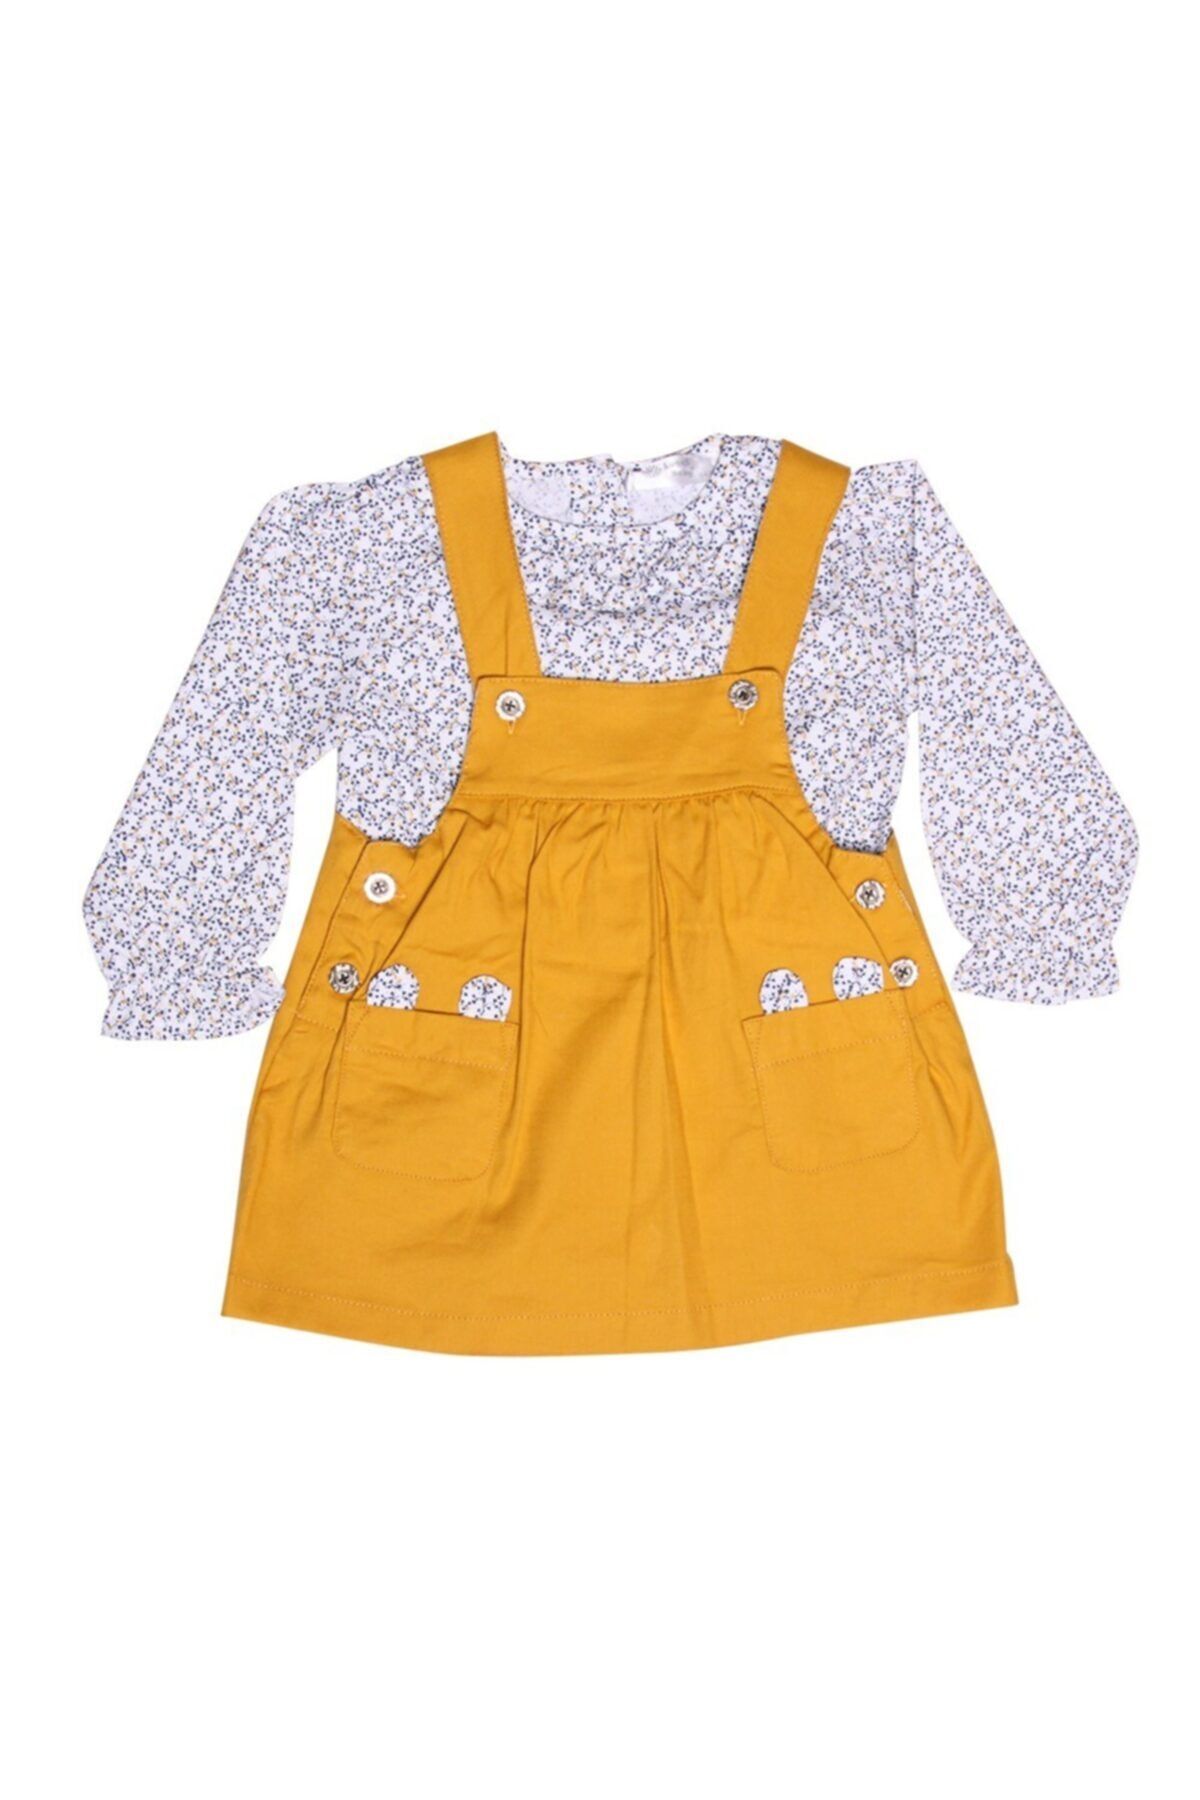 Luggi Baby Kız Çiçekli Gömlek & Hardal Elbise Takım Lg-4871-hdl